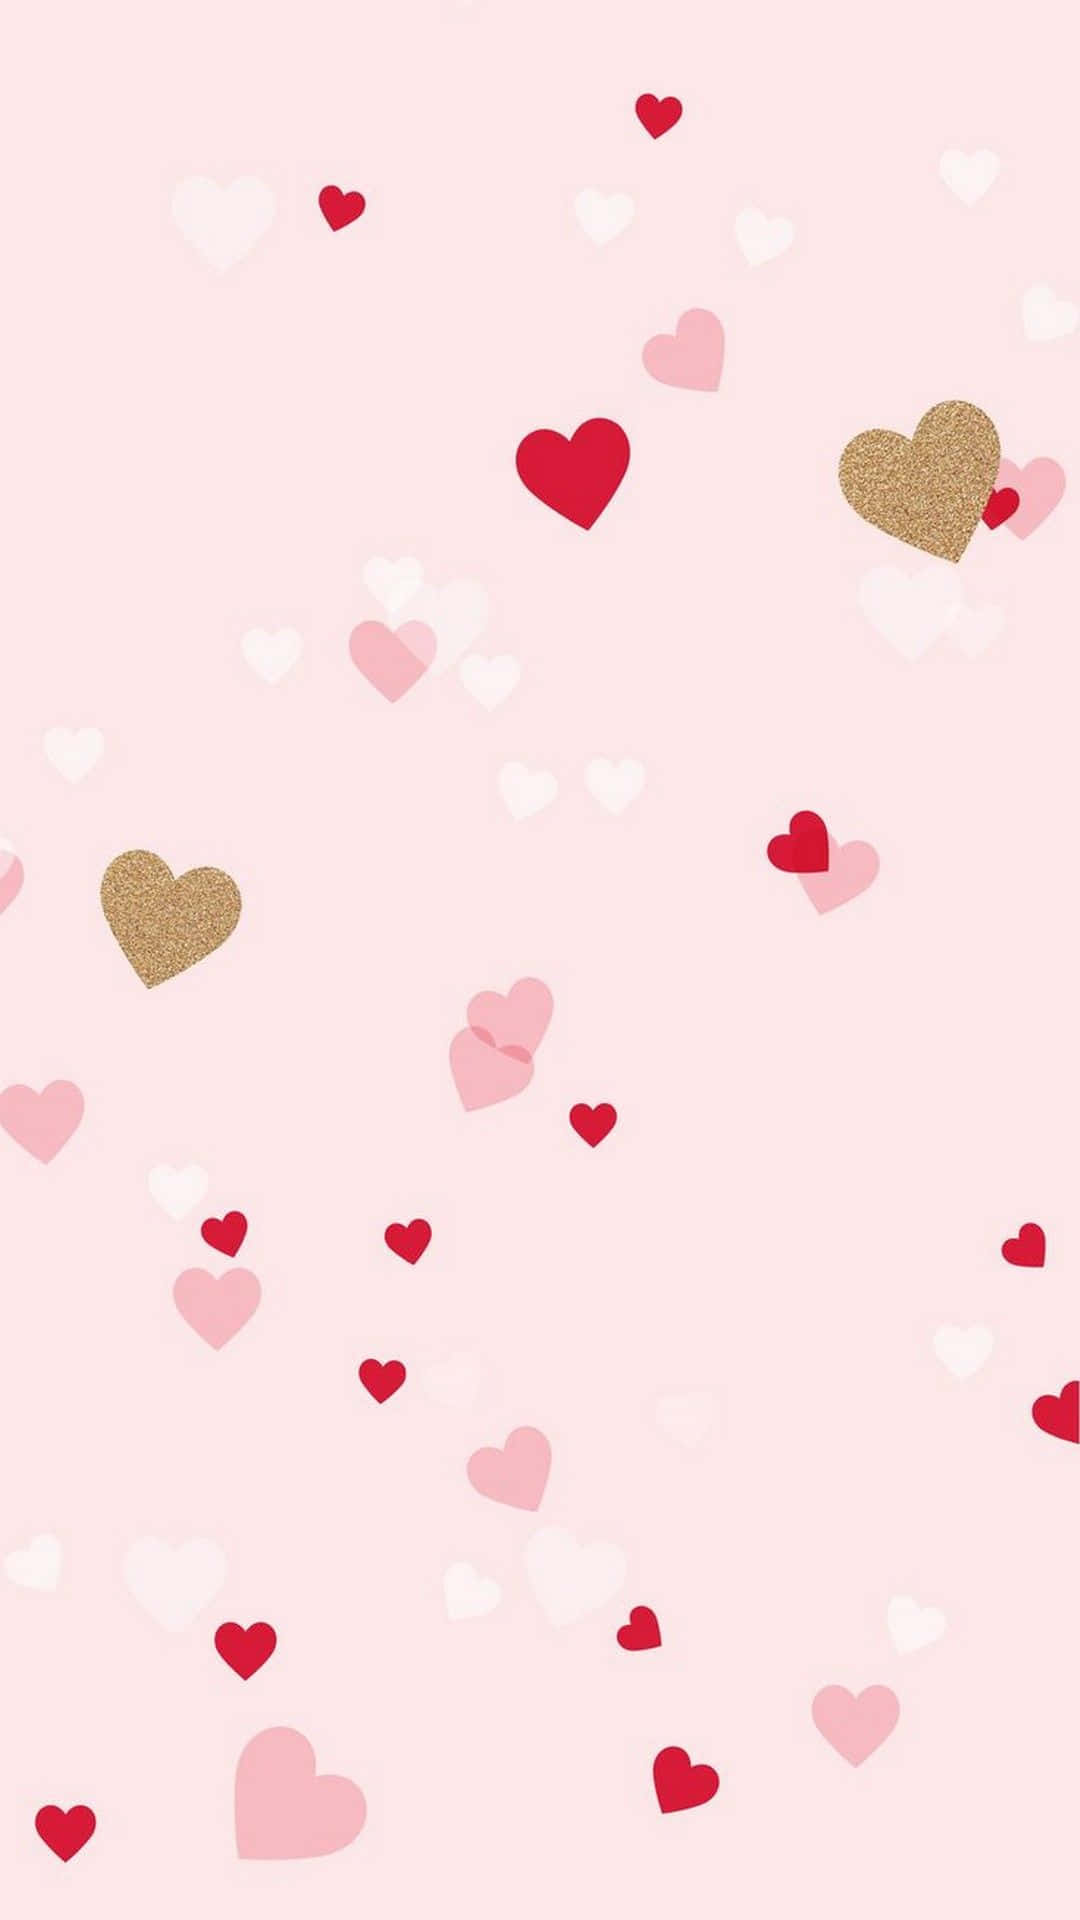 Muestraun Poco De Amor A Tu Ser Querido En San Valentín Este Año Con Un Toque De Dulzura. Fondo de pantalla